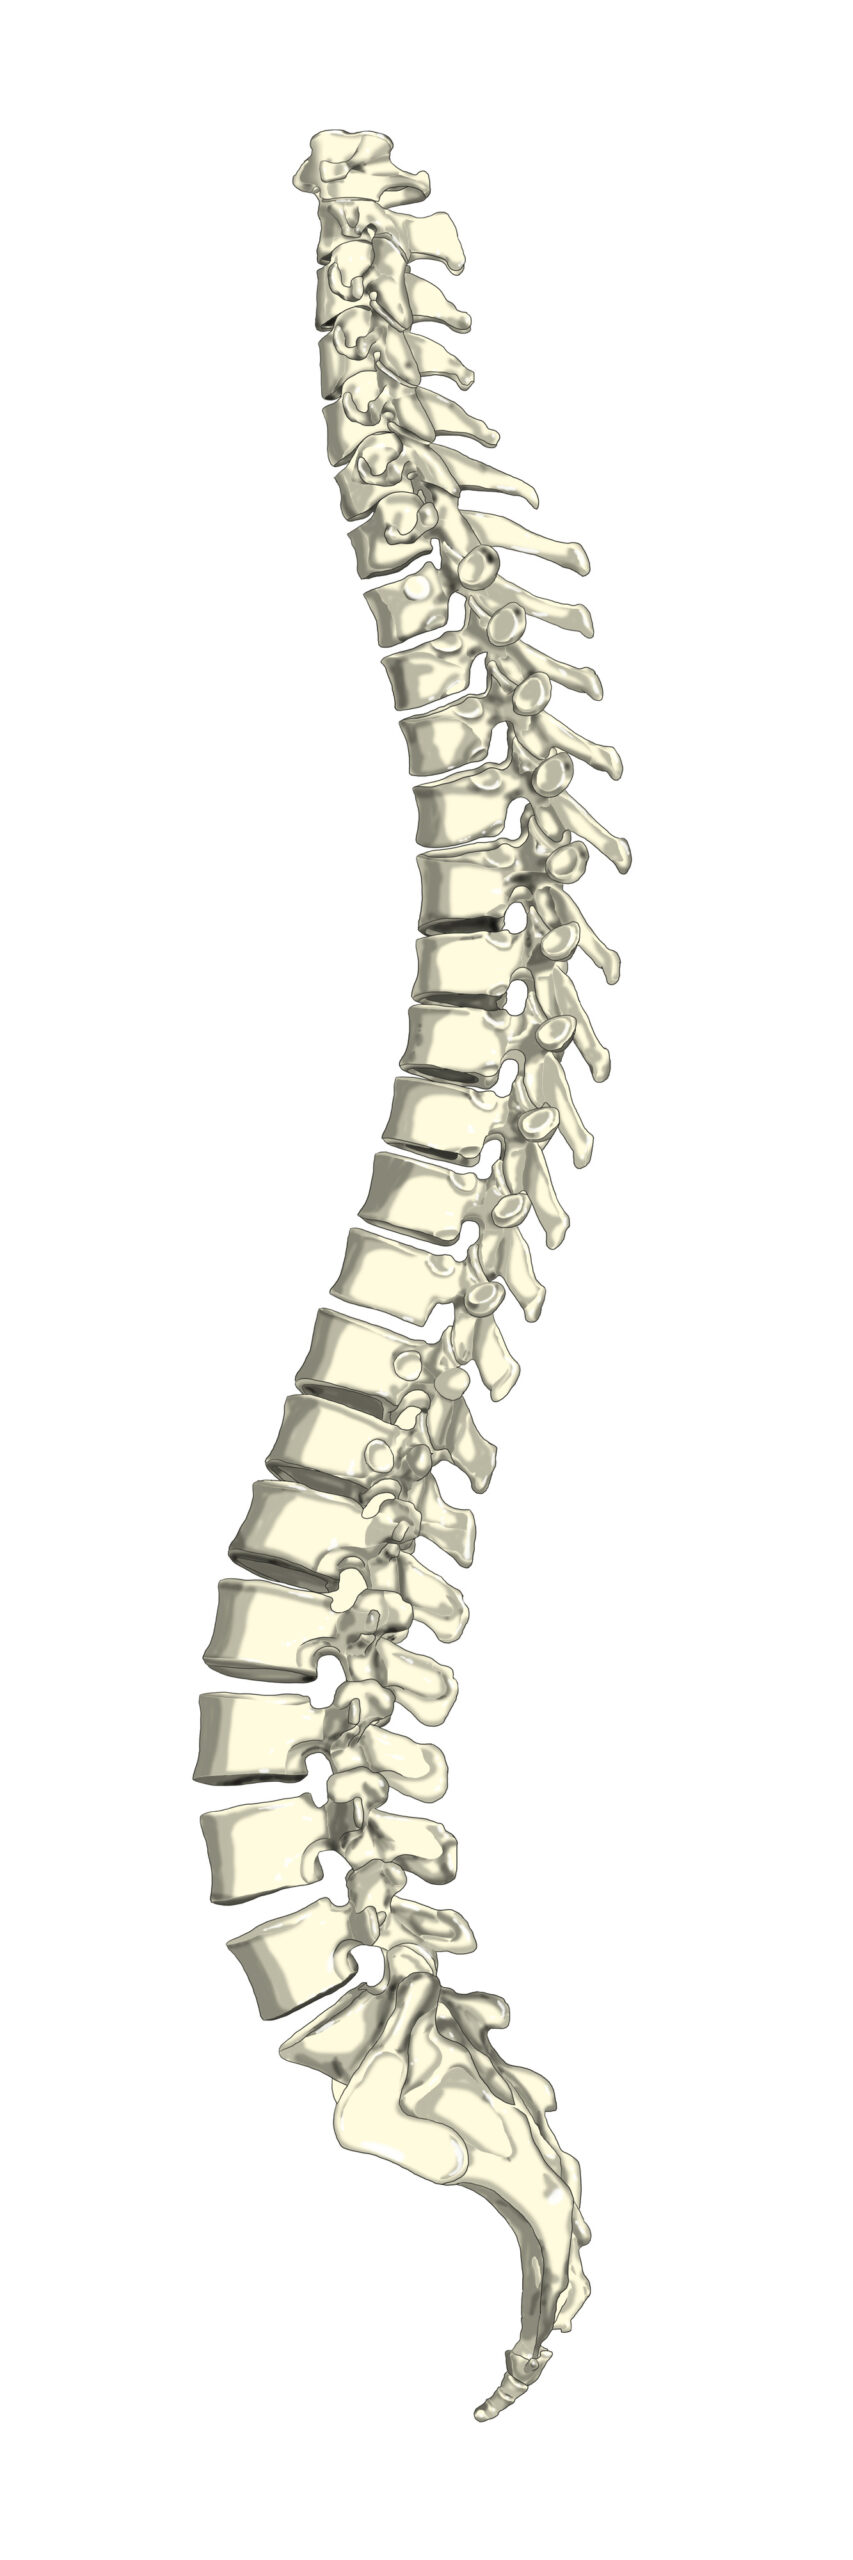 図: 横から見た理想的な背骨

